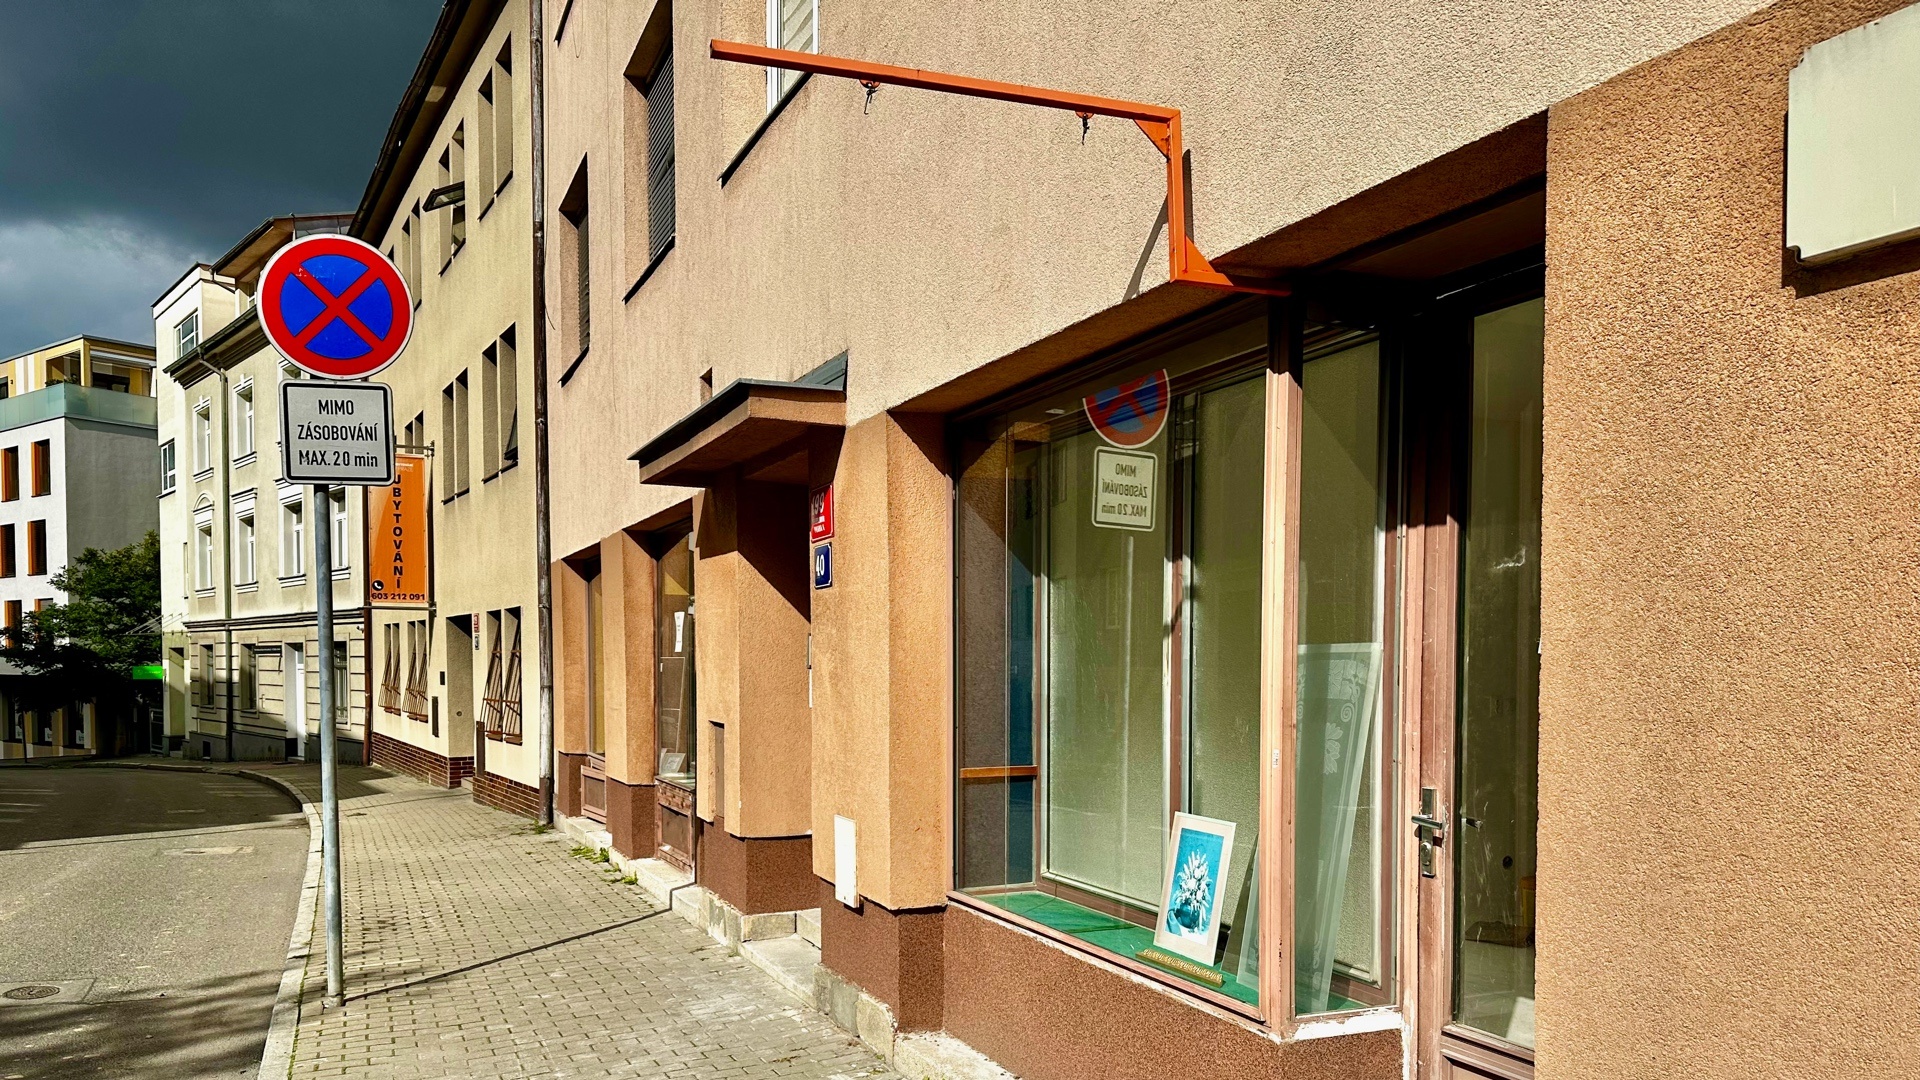 Pronájem pěkných nebytových prostor po rekonstrukci s výlohou, 43 m² Praha 6 - Veleslavín